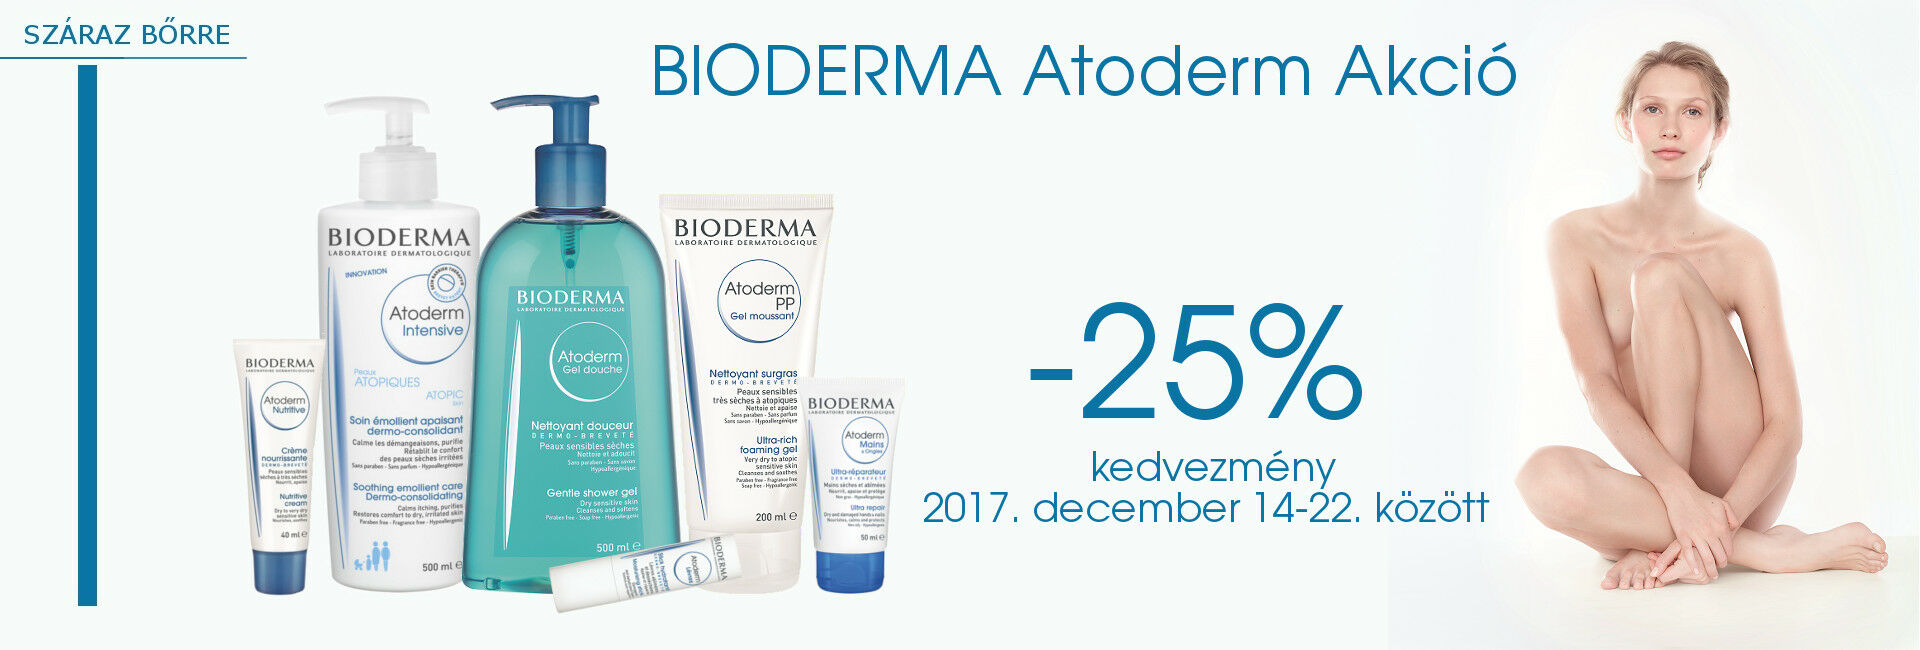 Bioderma Atoderm termékeket 2017. december 14-22. között 25% kedvezménnyel kínáljuk!